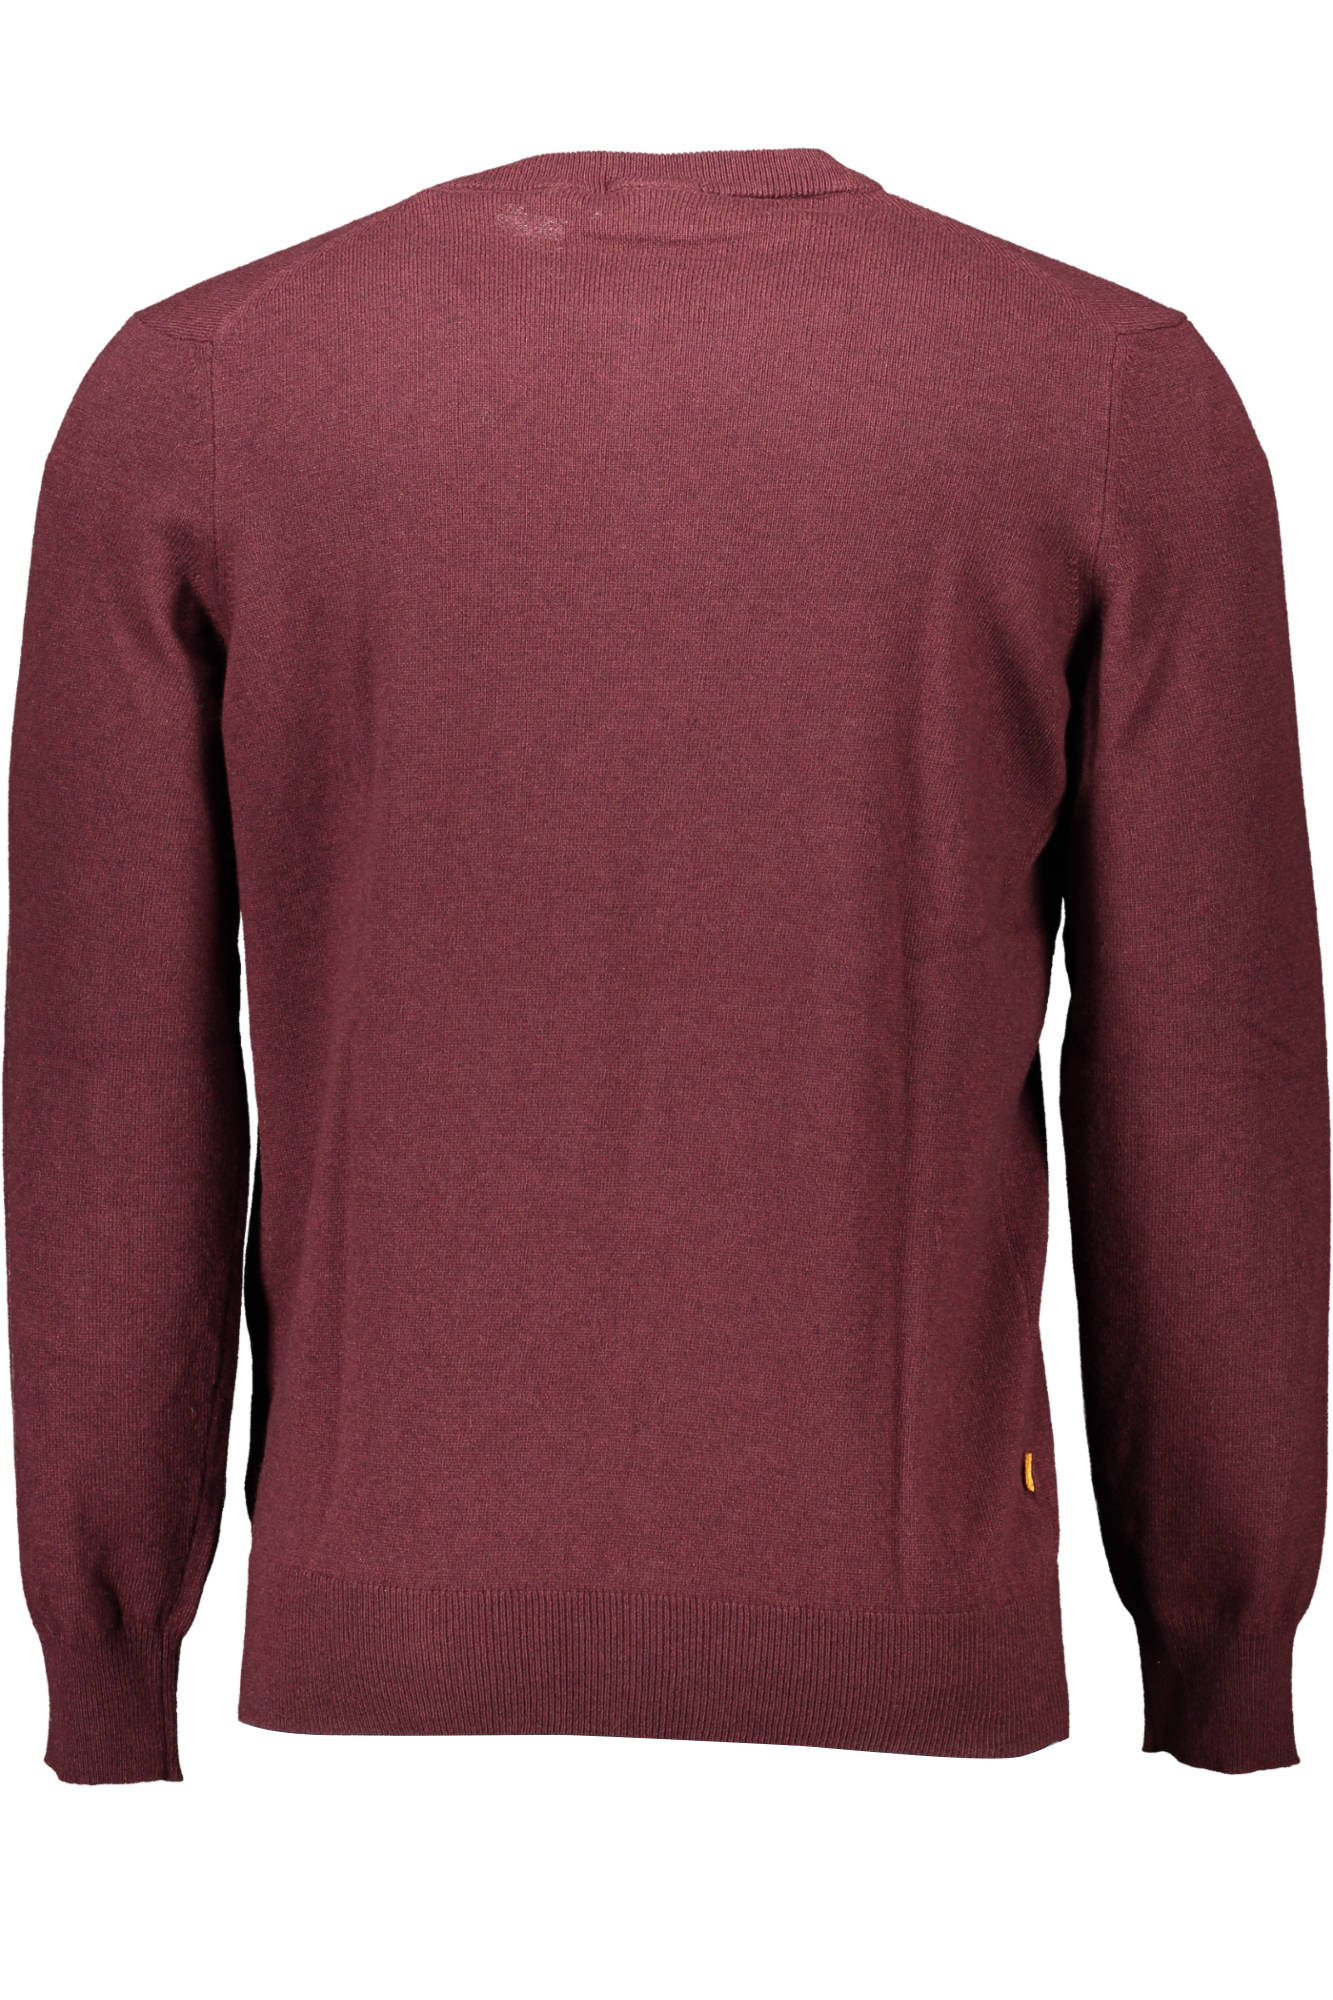 Timberland Red Wool Sweater - Fizigo